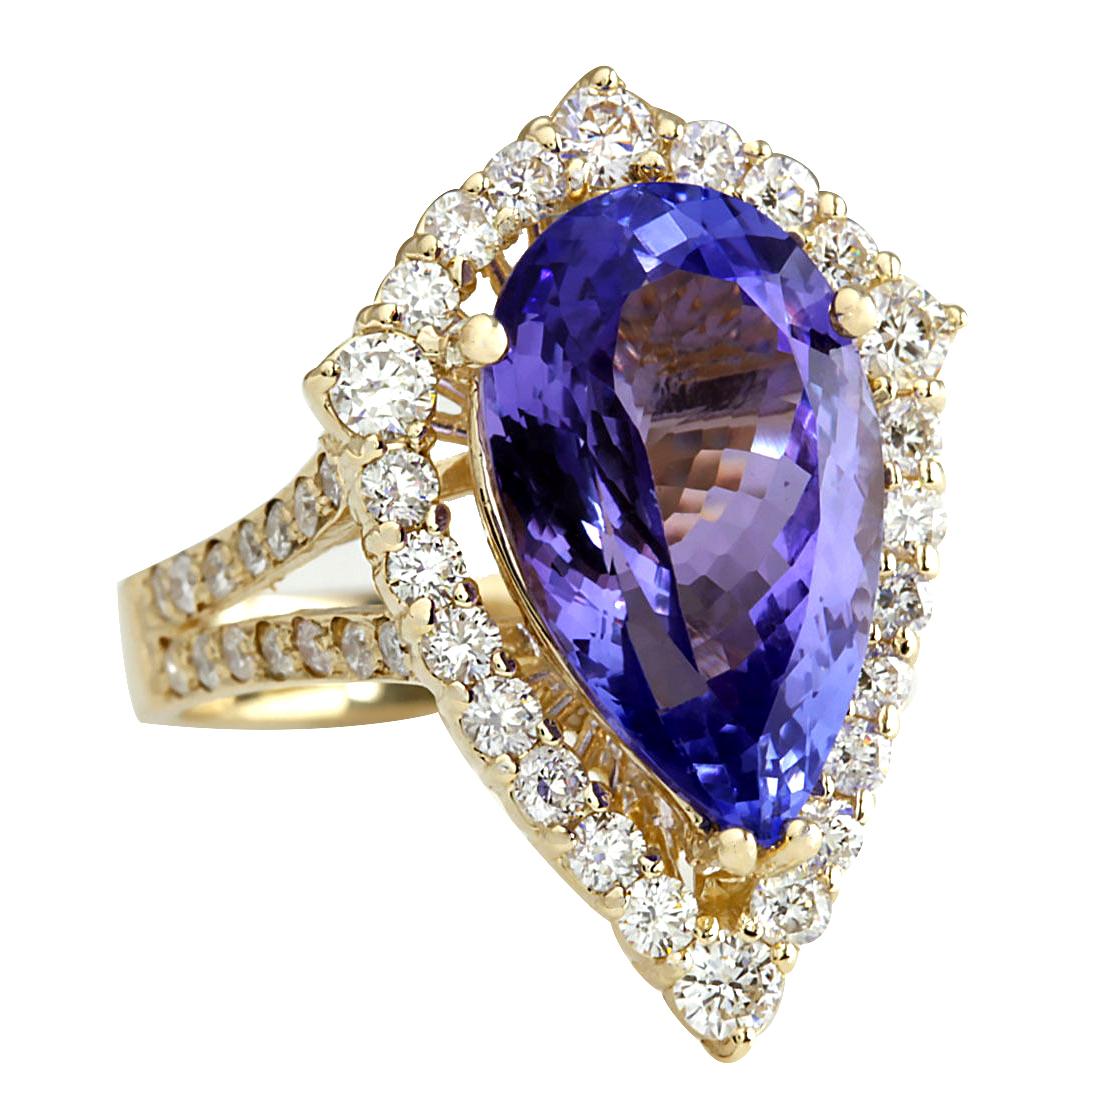 8.16 Carat Tanzanite 14 Karat Yellow Gold Diamond Ring
Stamped: 14K Yellow Gold
Total Ring Weight: 6.7 Grams
Total  Tanzanite Weight is 7.15 Carat (Measures: 16.00x9.00 mm)
Color: Blue
Total  Diamond Weight is 1.01 Carat
Color: F-G, Clarity: